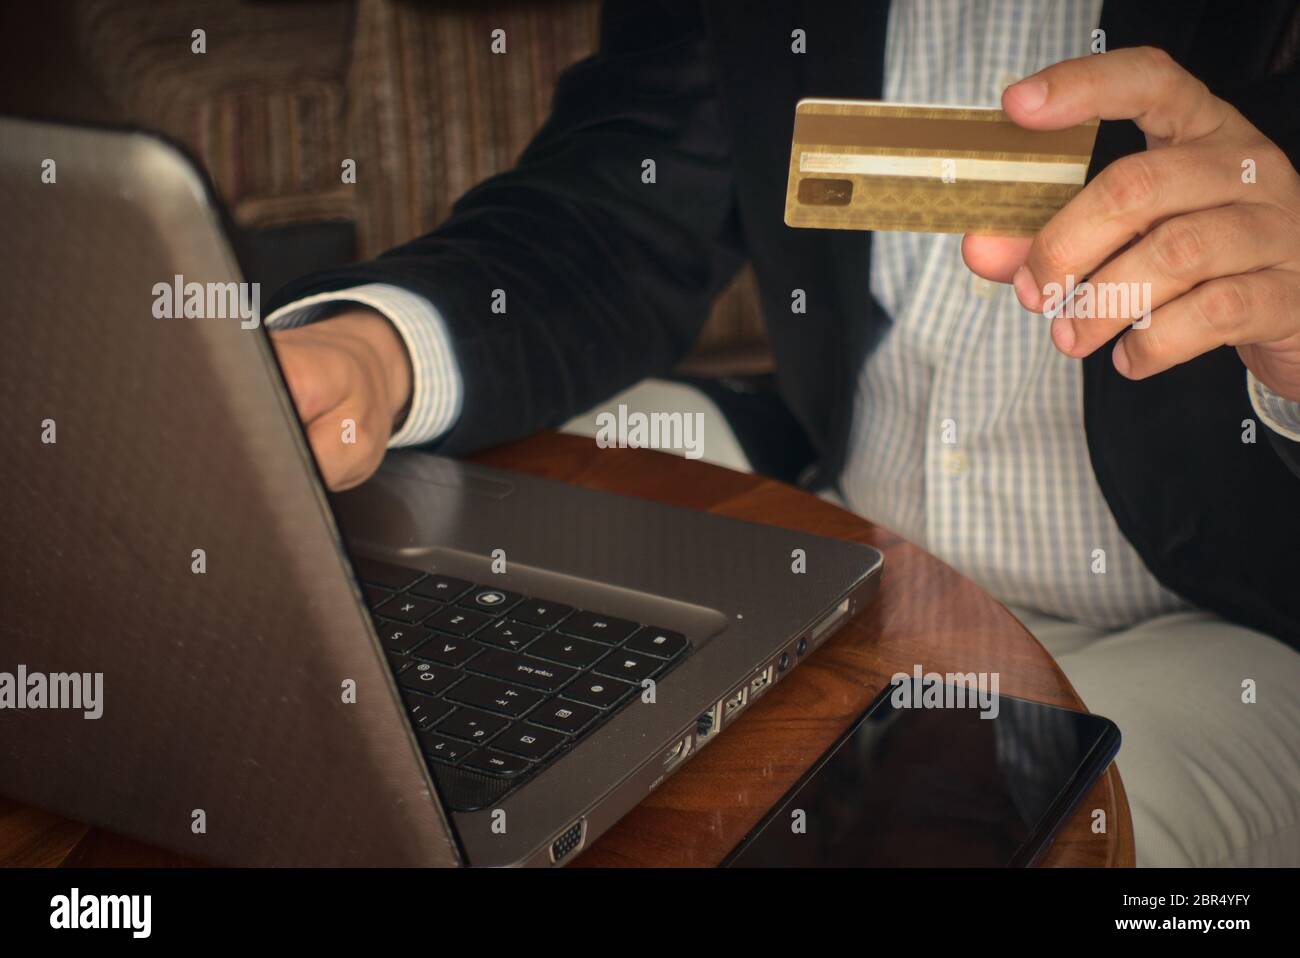 Nahaufnahme Mann in smarter Kleidung hält eine Kreditkarte kaufen Produkt online von seinem Laptop mit einem Telefon daneben auf einem Tisch zu Hause Stockfoto